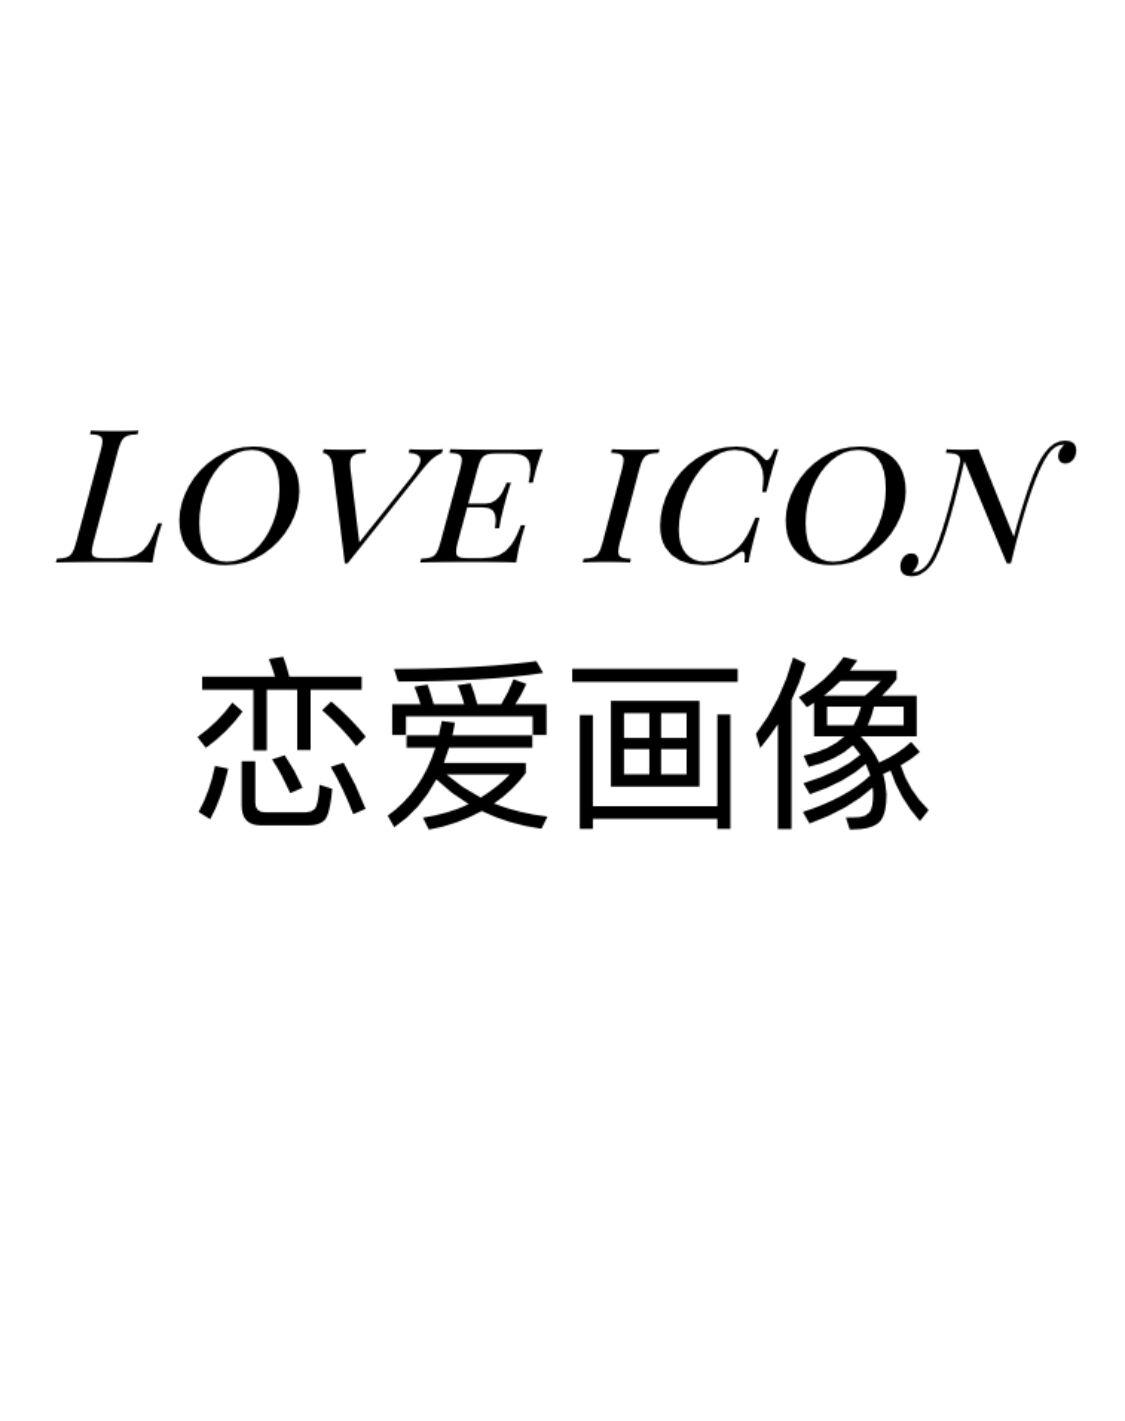 恋爱画像 LOVE ICON